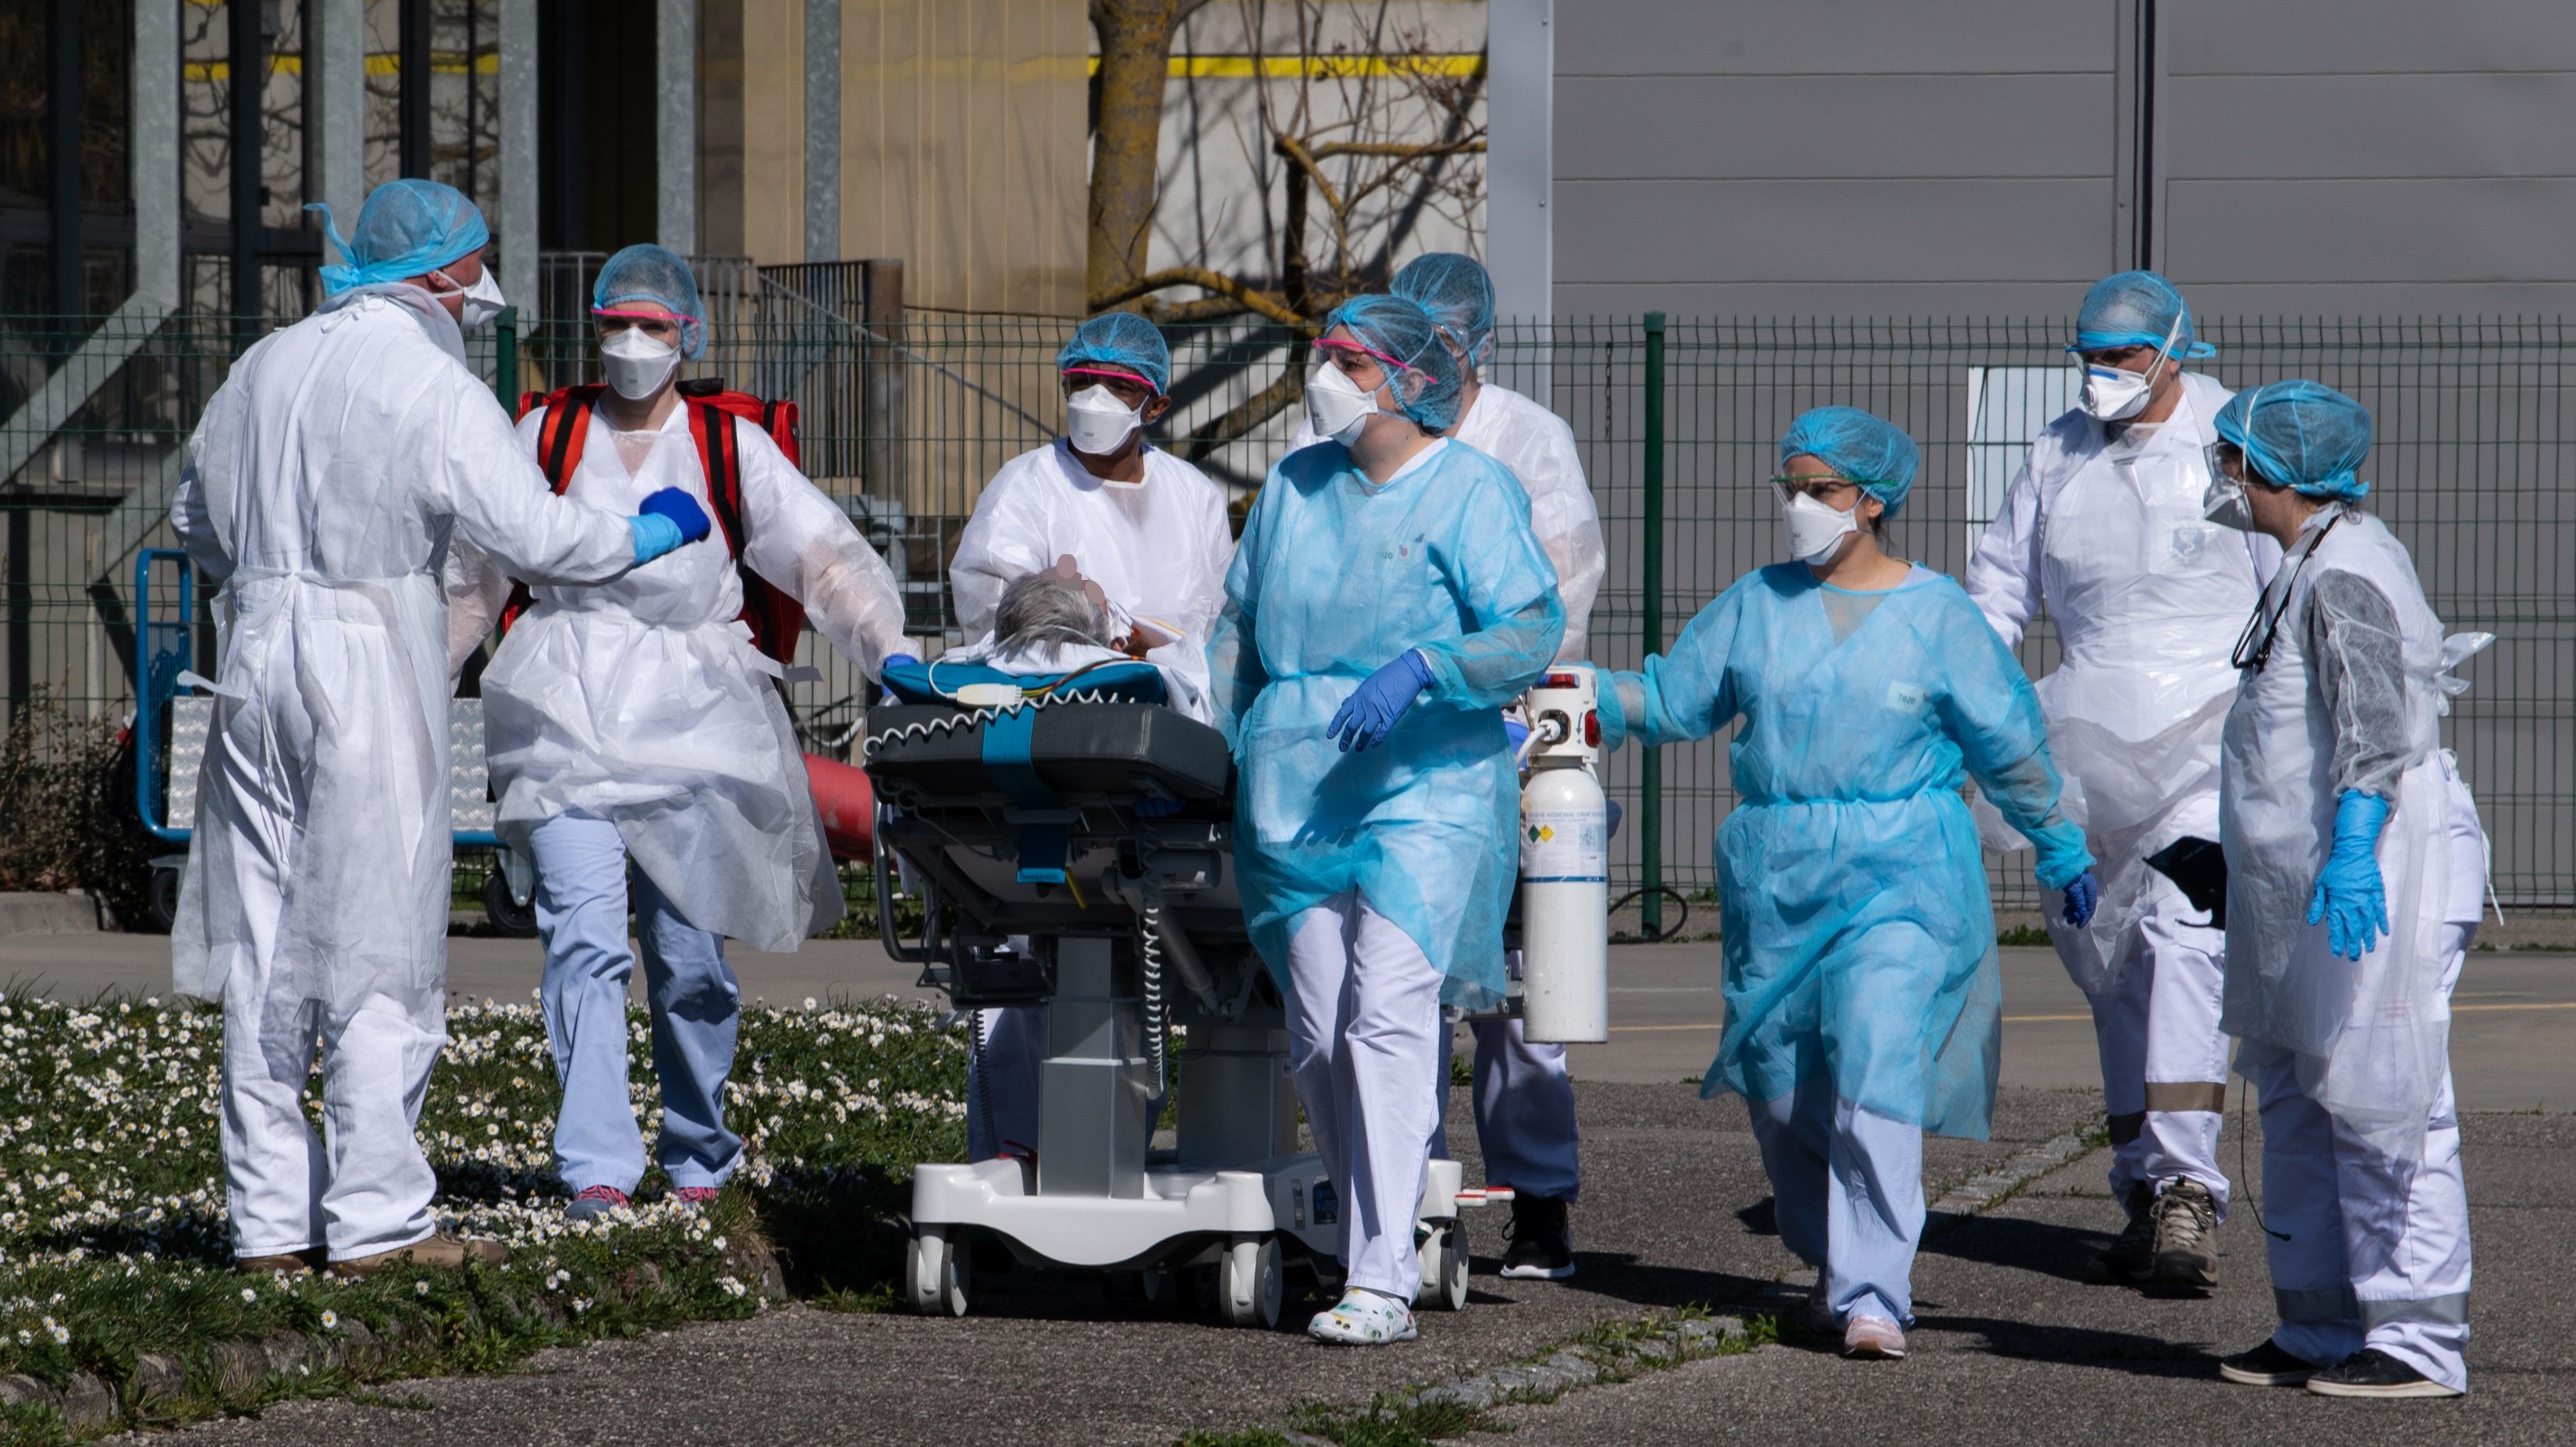 Egy francia idősek otthonában 20 lakó halt meg koronavírusban